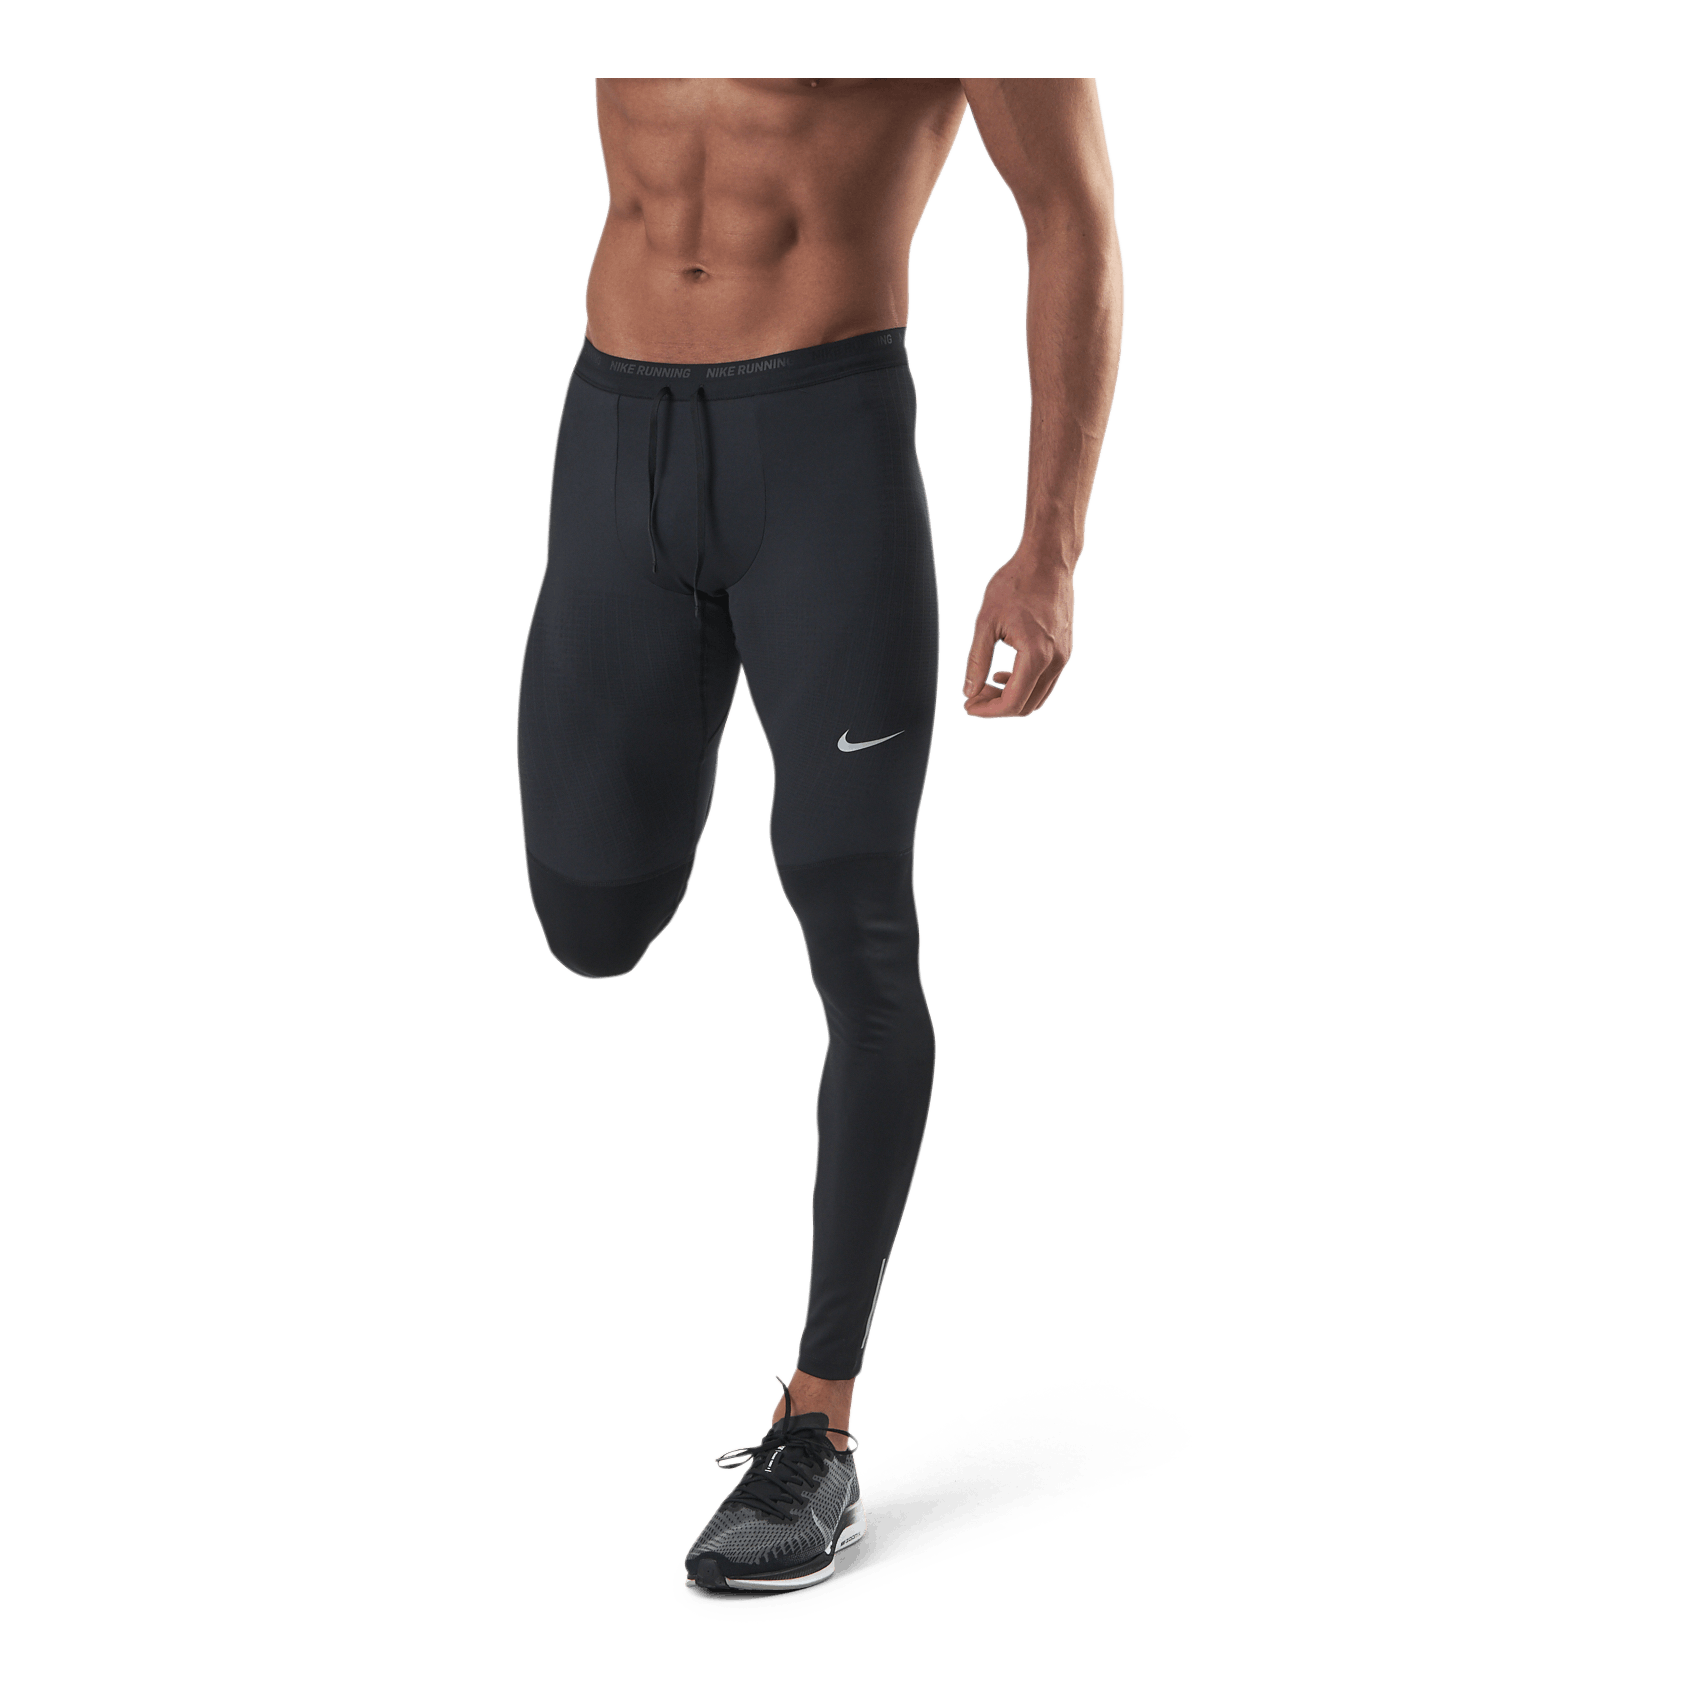 Phenom Elite Men's Running Tights BLACK/REFLECTIVE SILV - Nike